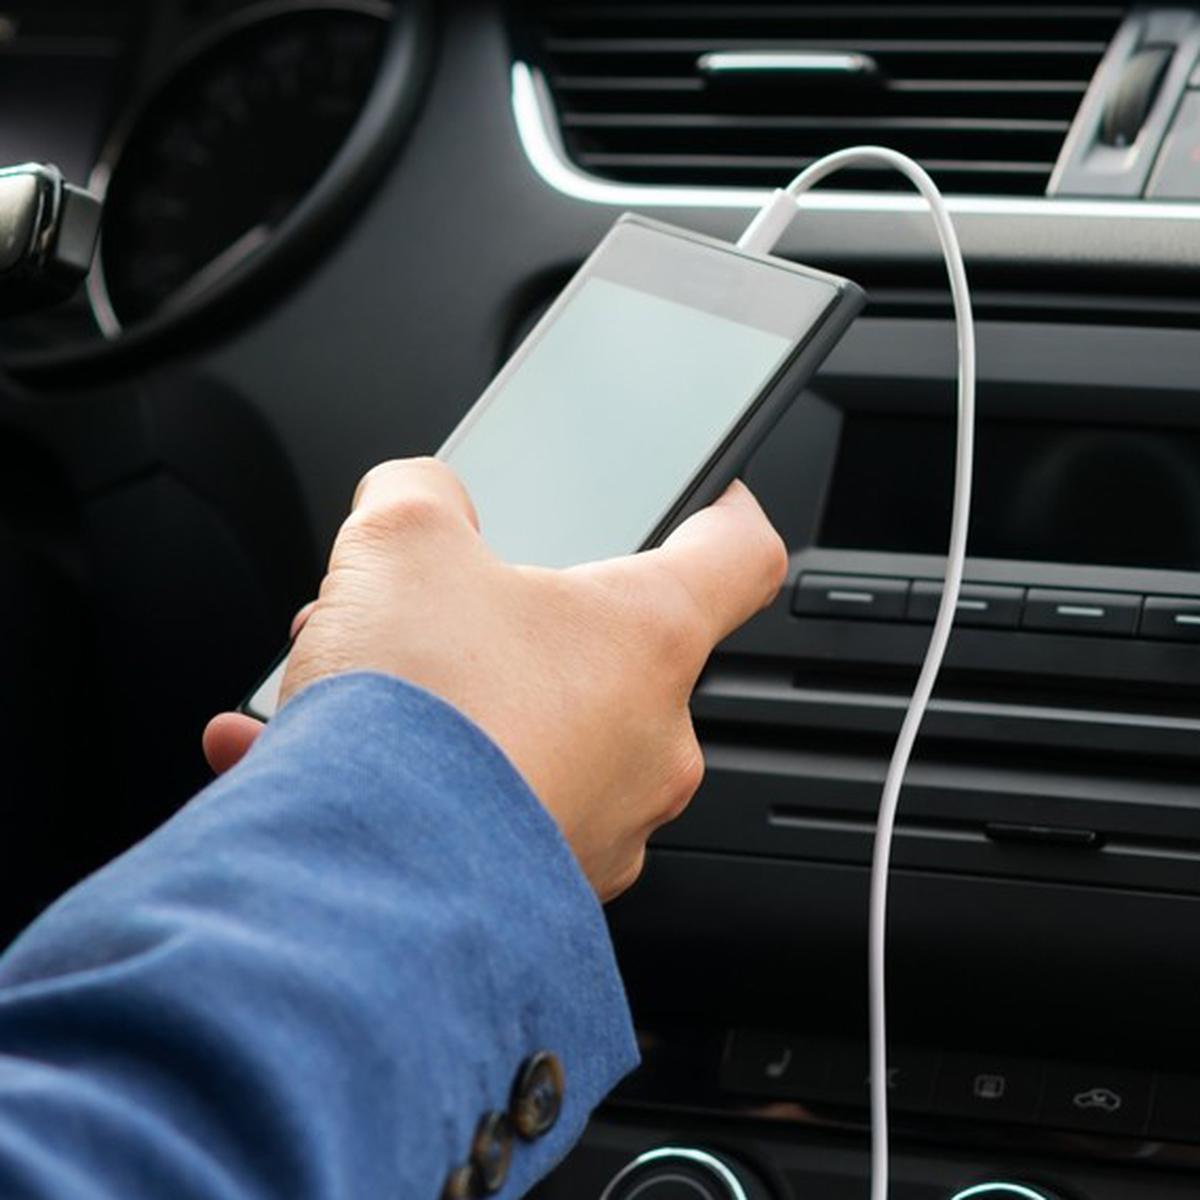 Es mejor cargar el móvil en el USB o en el mechero de tu coche? - VÍDEO